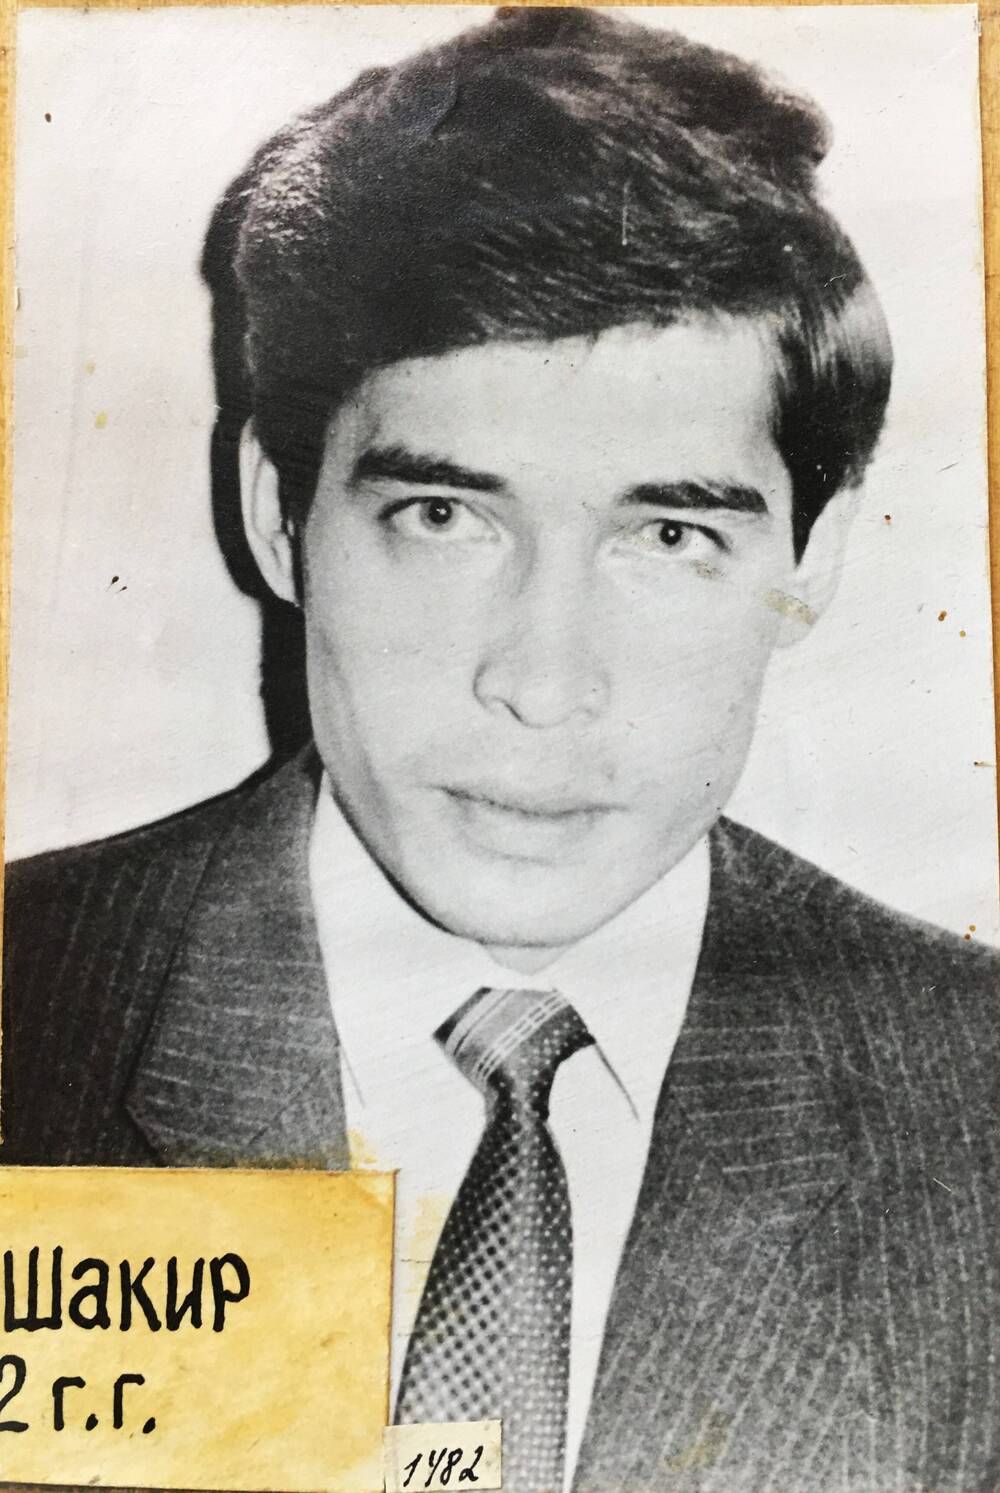 Фотокопия фотографии черно-белая. Раемгулов Шакир, активный секретарь ученической комсомольской организации Успенской средней школы в 1981 - 1982 годах.